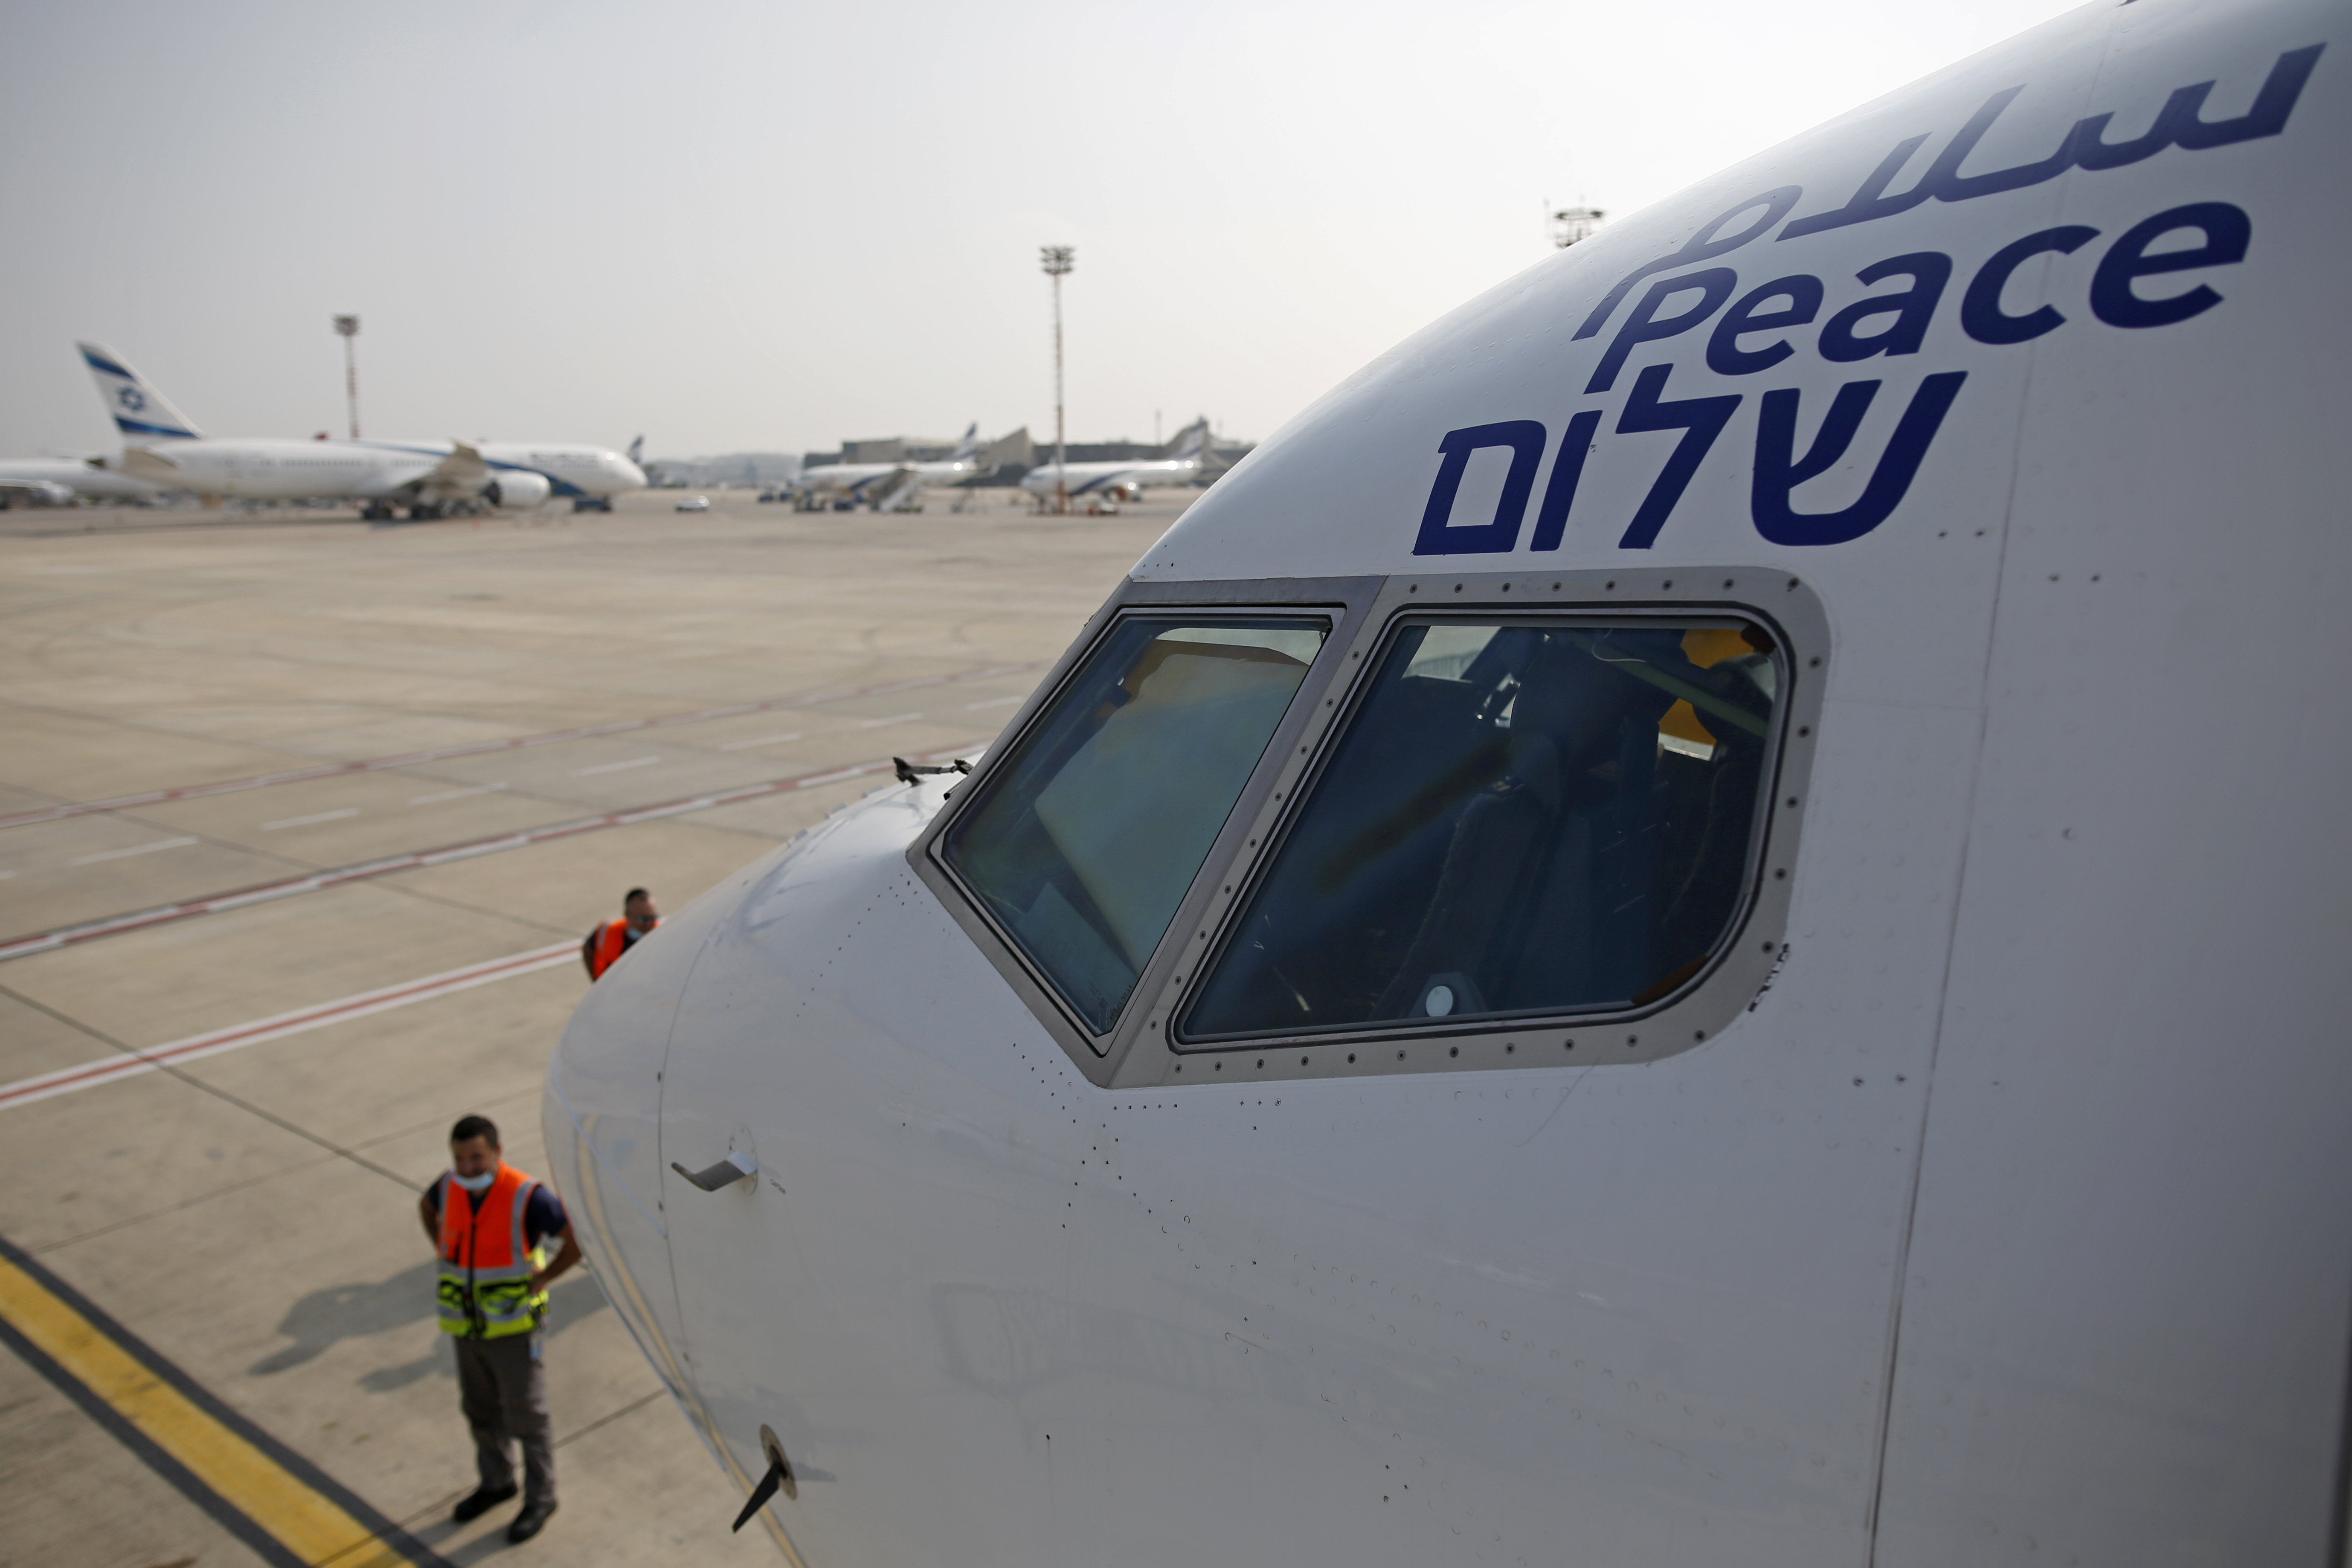 Днес от Тел Авив излетя първият самолет изпълняващ пряк търговски